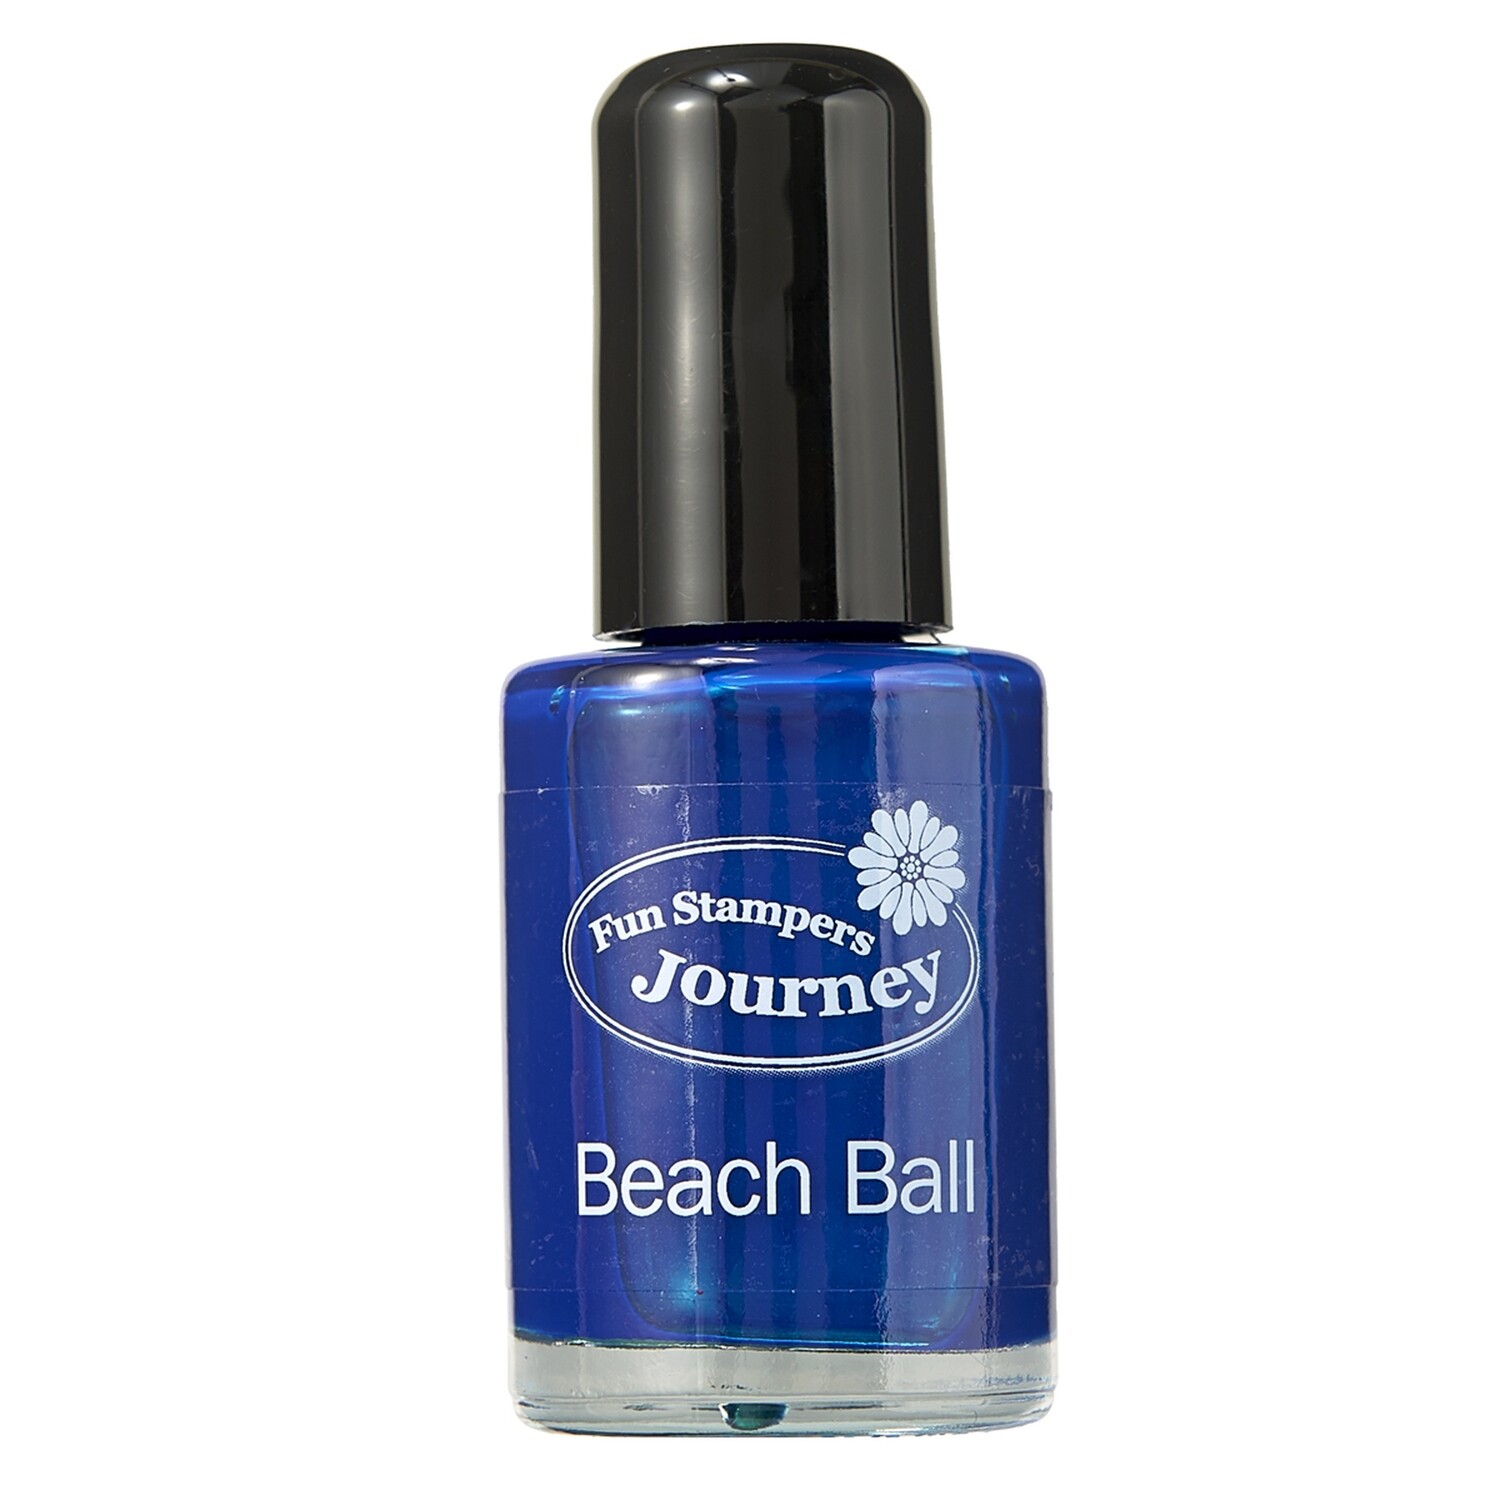 Spellbinders Fun Stampers Journey Silks - Beach Ball